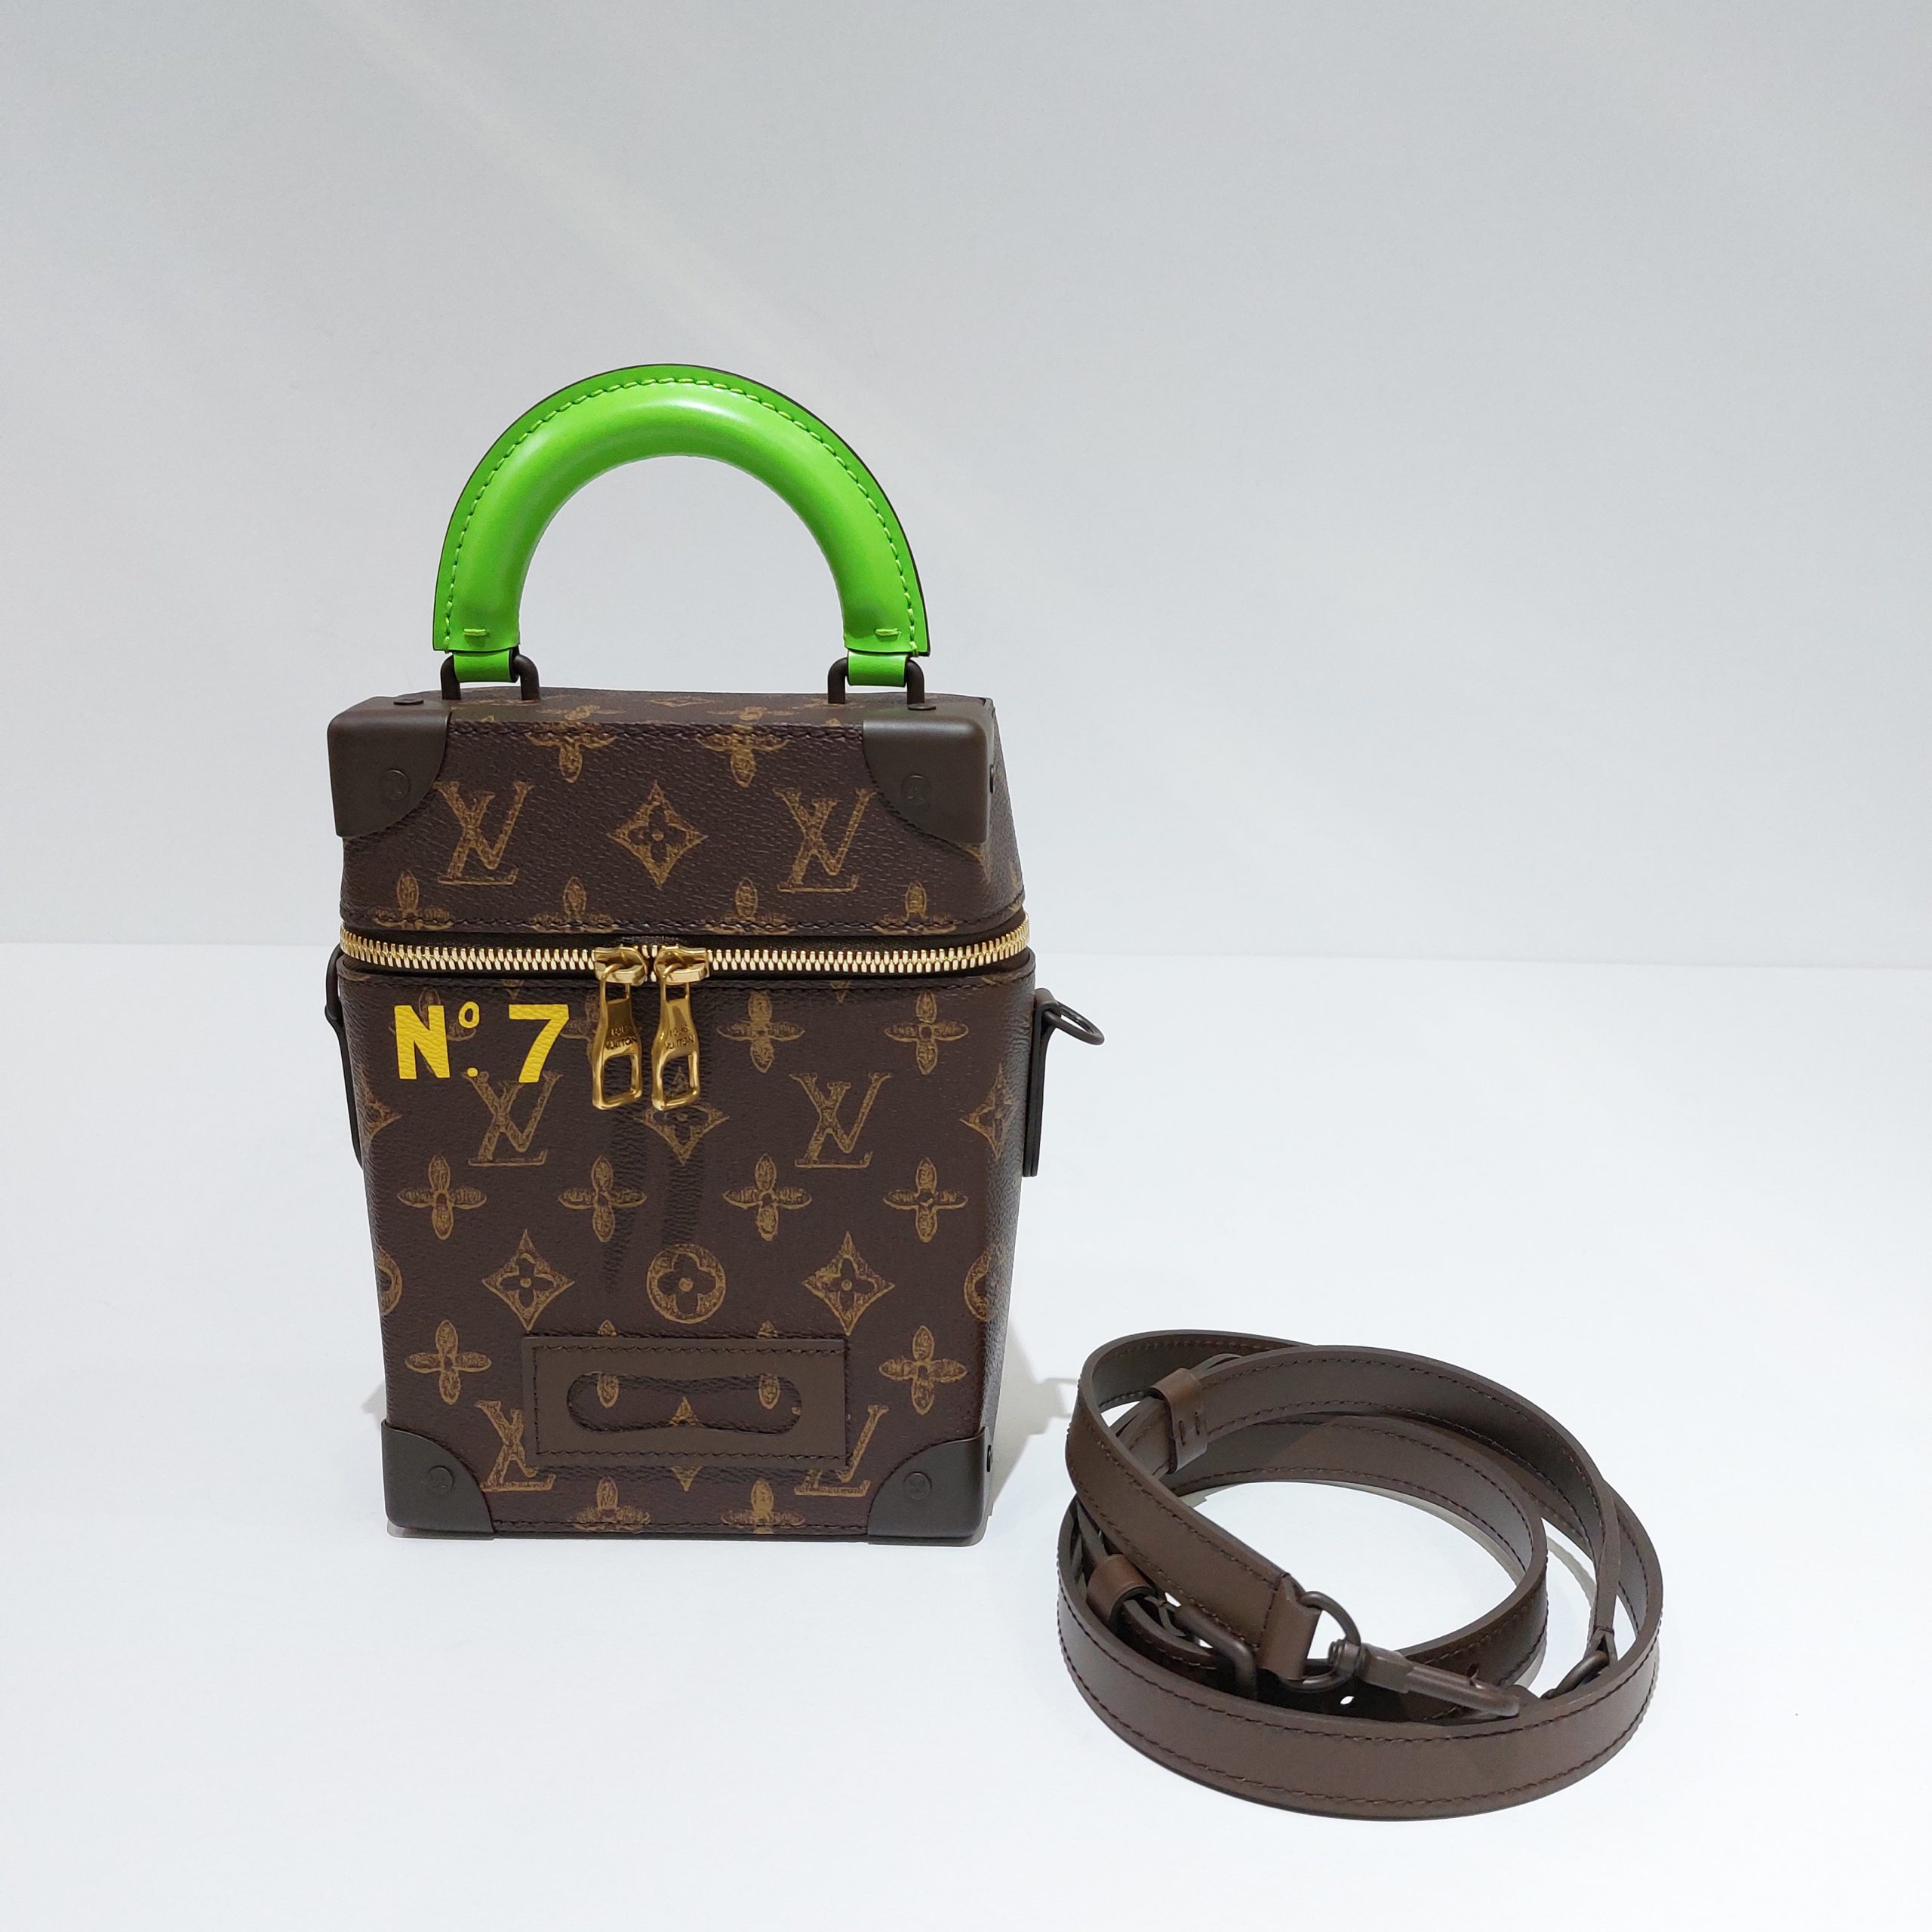 FWRD Renew Louis Vuitton Monogram Verticals Box Trunk in Brown & Green